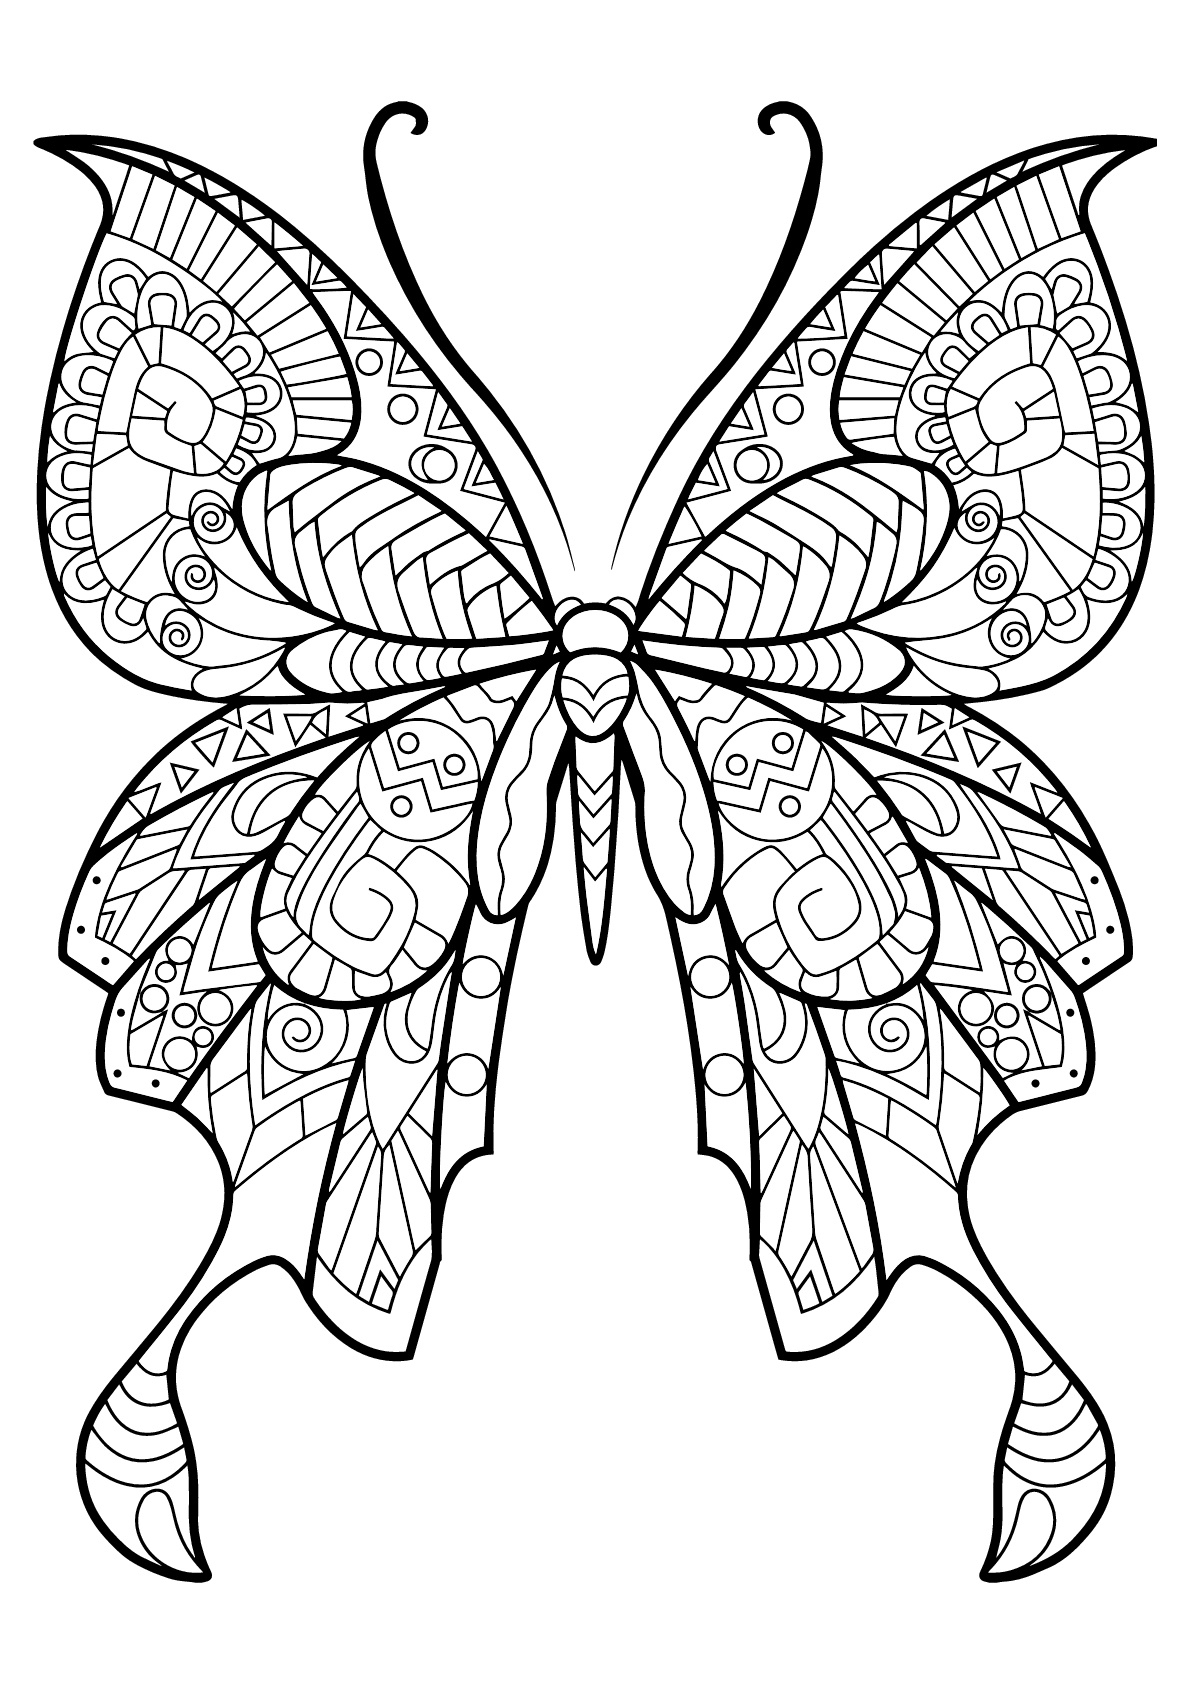 Coloriage De Papillons Pour Enfants - Coloriage De Papillons destiné Coloriage Papillon